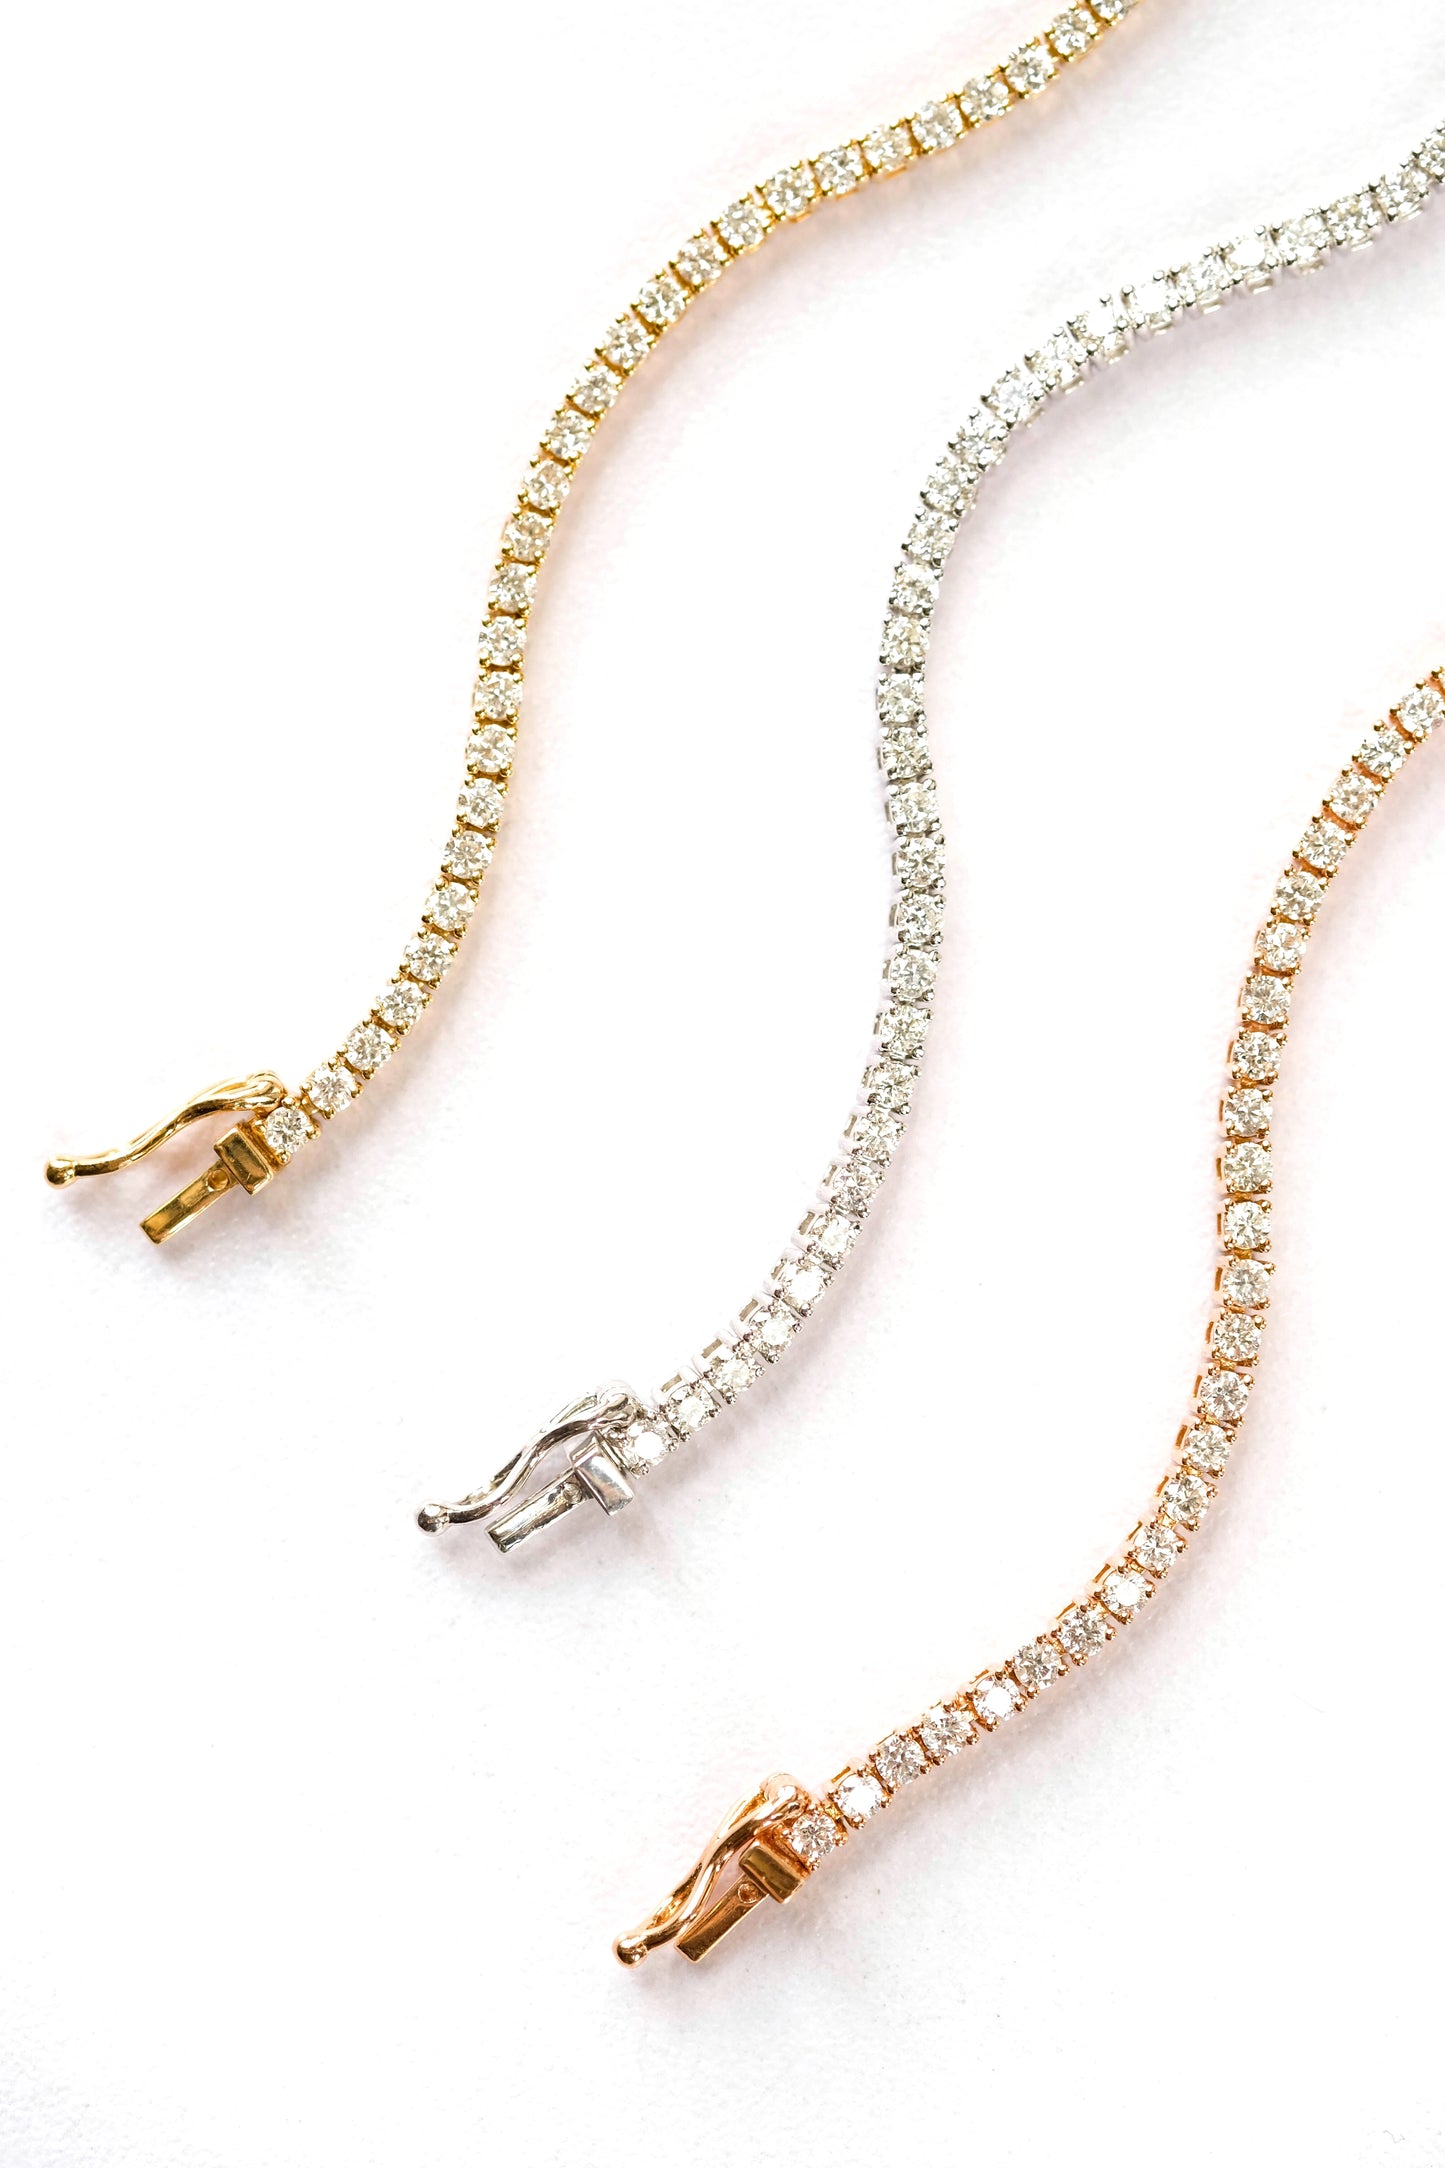 White gold & diamond 'tennis' bracelet